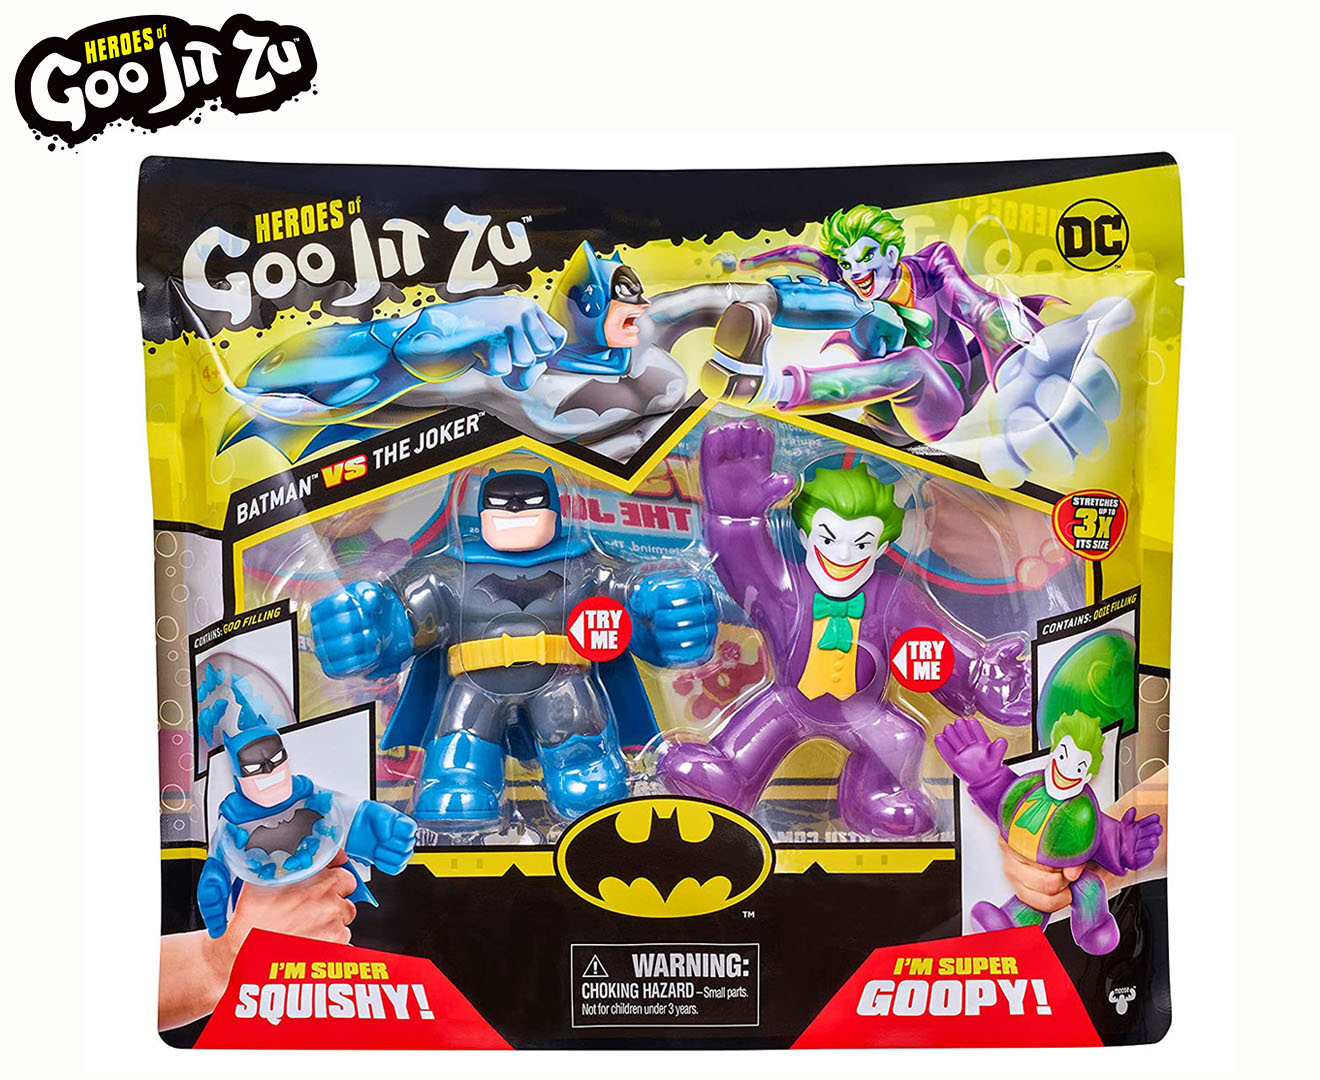 Heroes of Goo Jit Zu Batman vs The Joker DC Versus Pack 